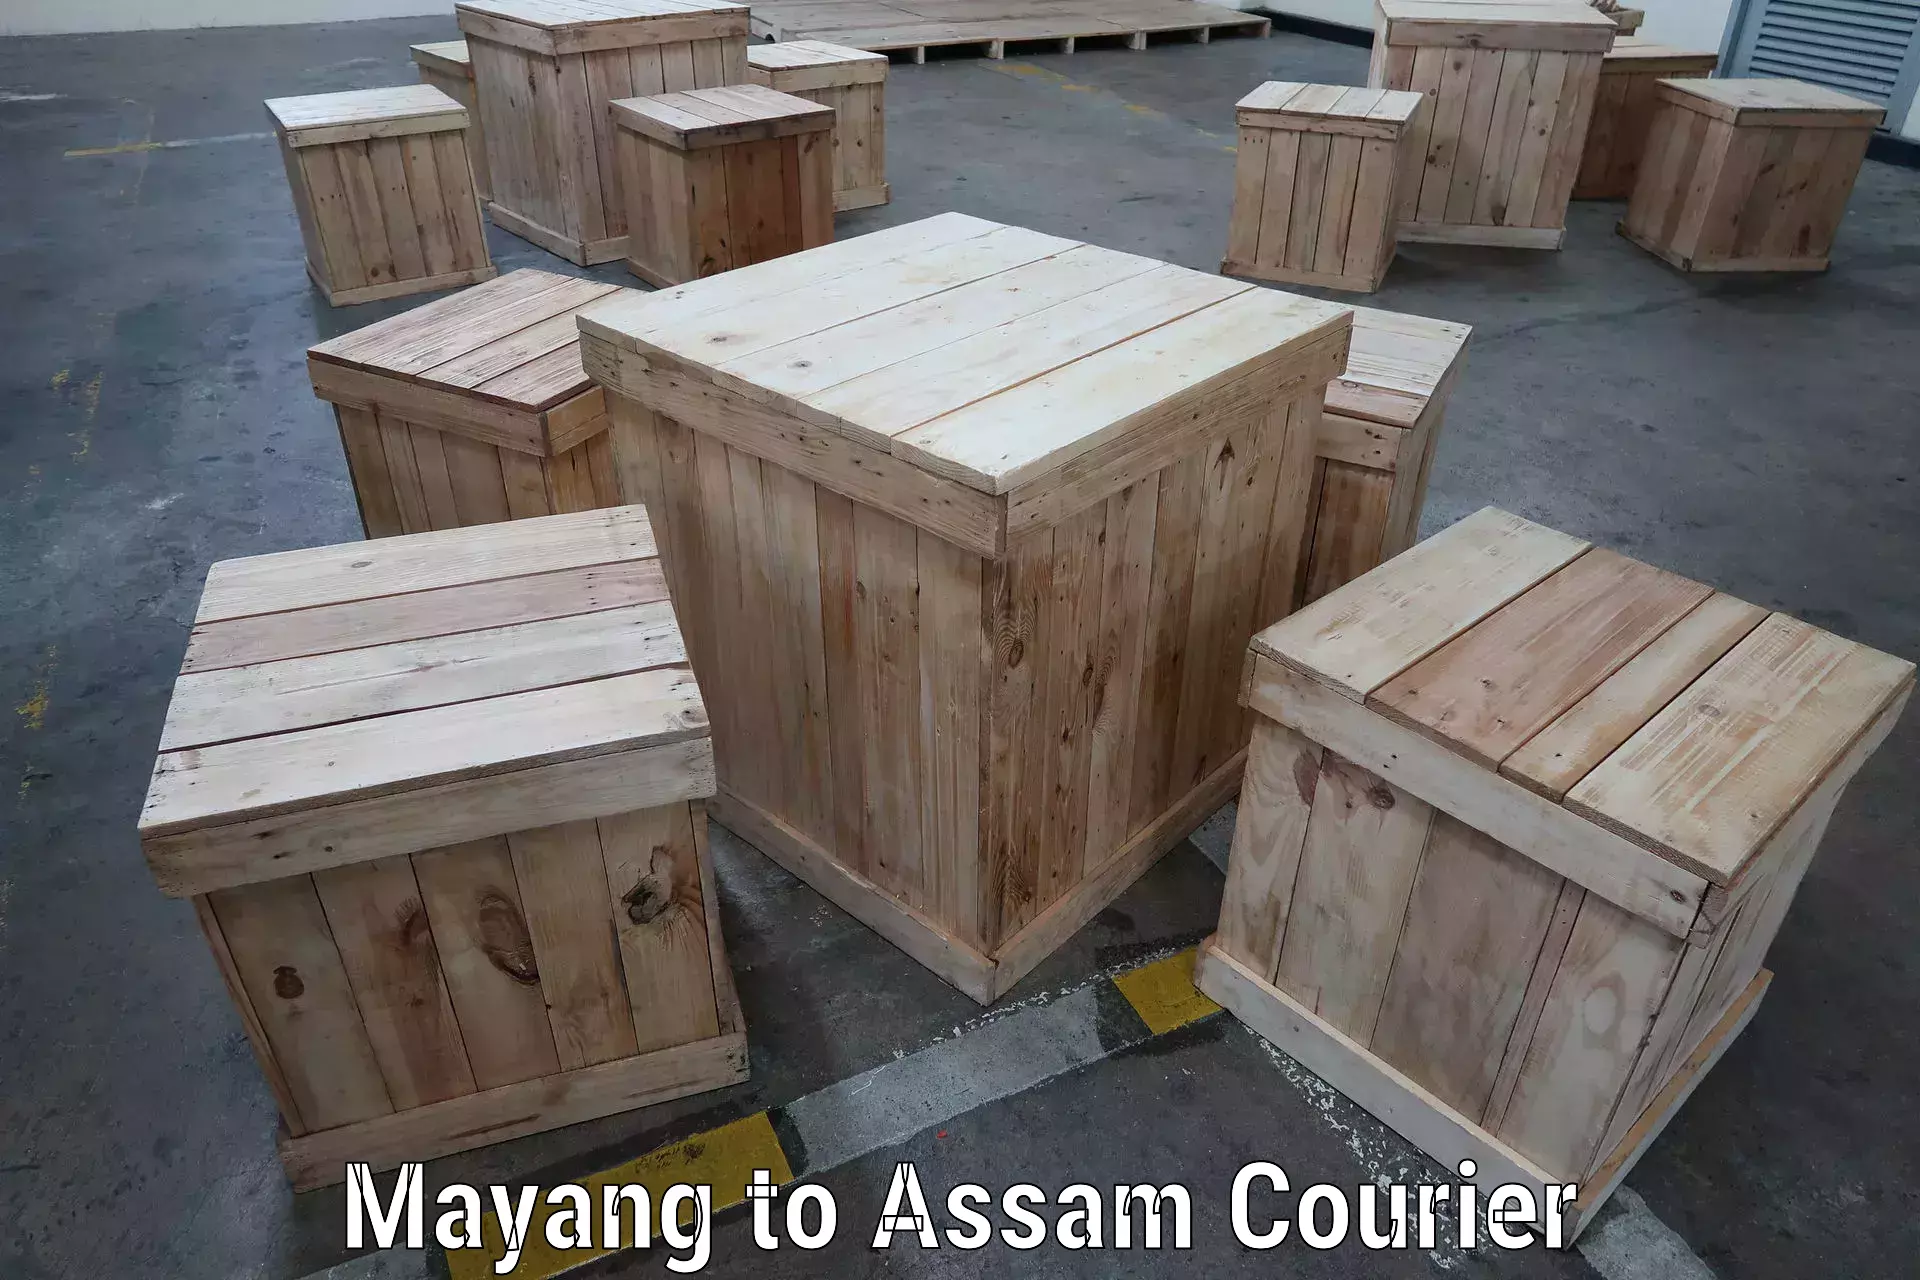 High-capacity shipping options Mayang to Rangia